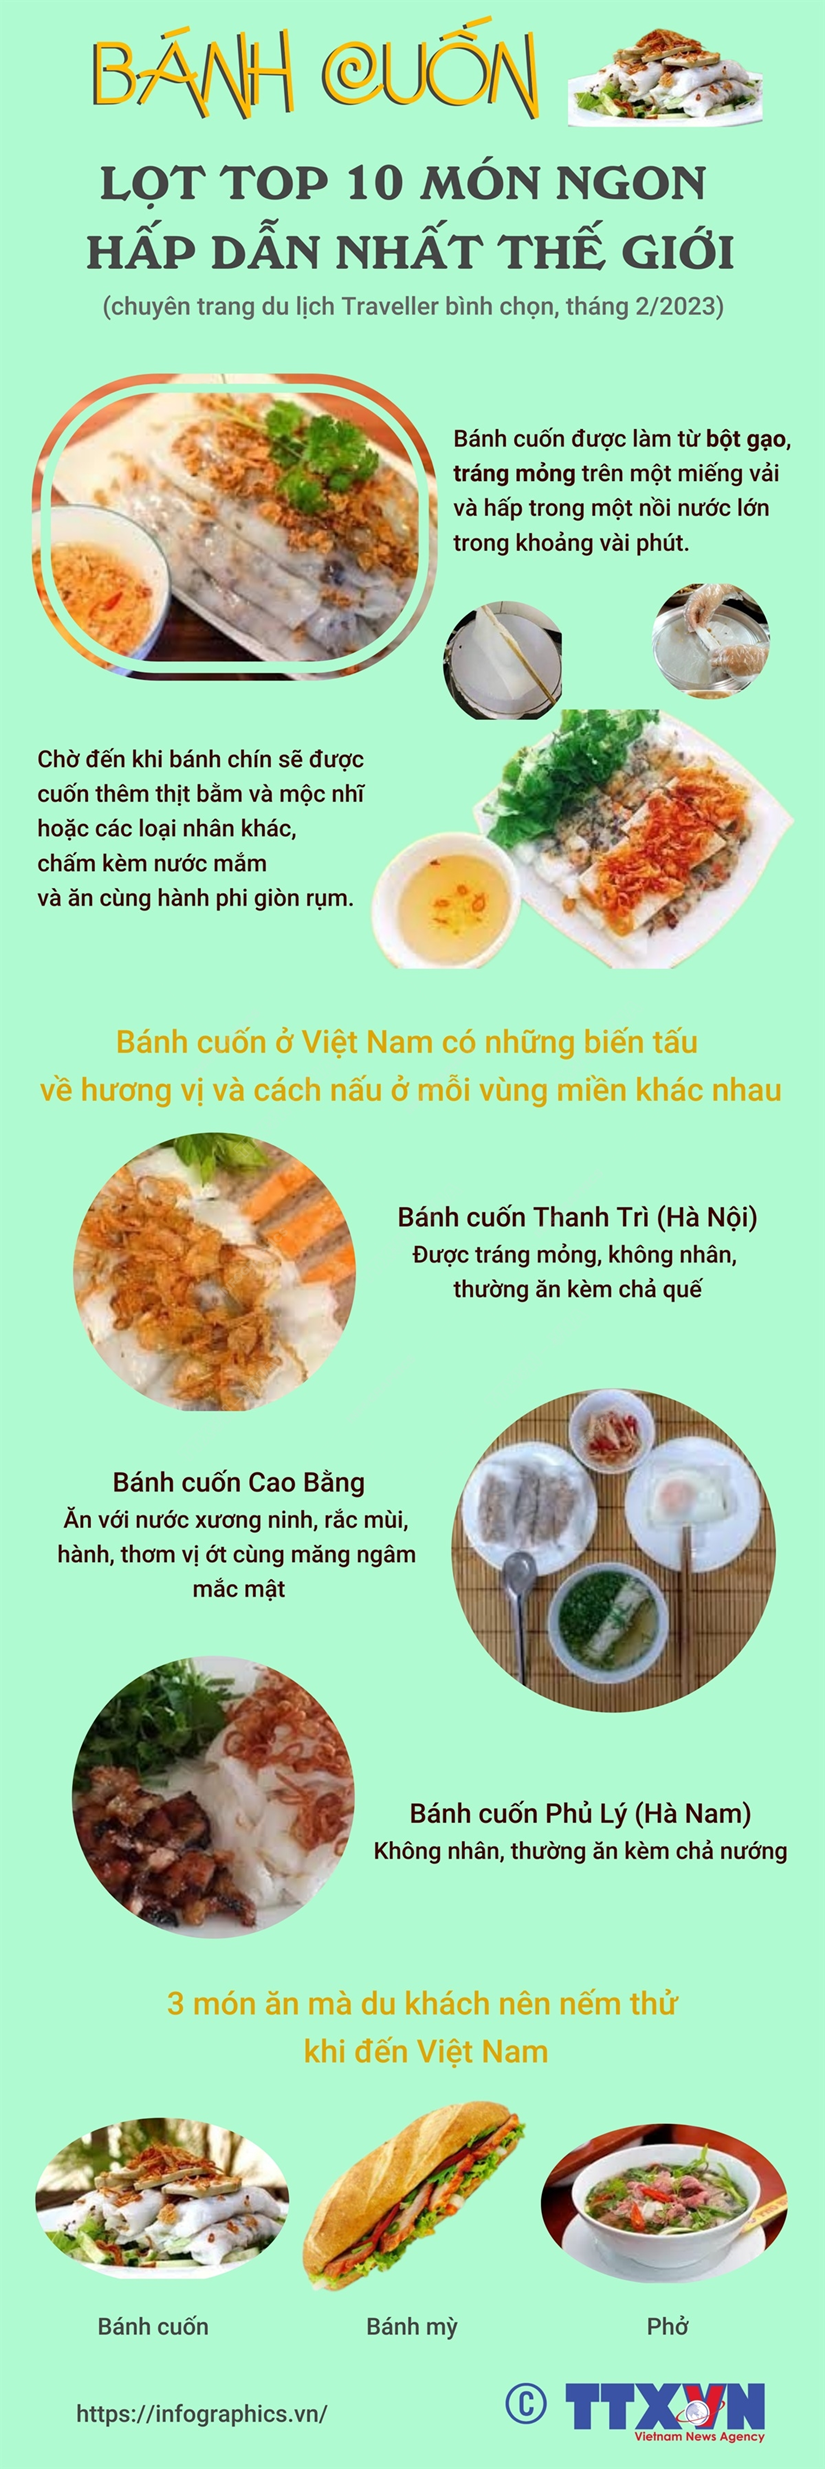 [Infographics] Banh cuon lot top 10 mon ngon hap dan nhat the gioi hinh anh 1